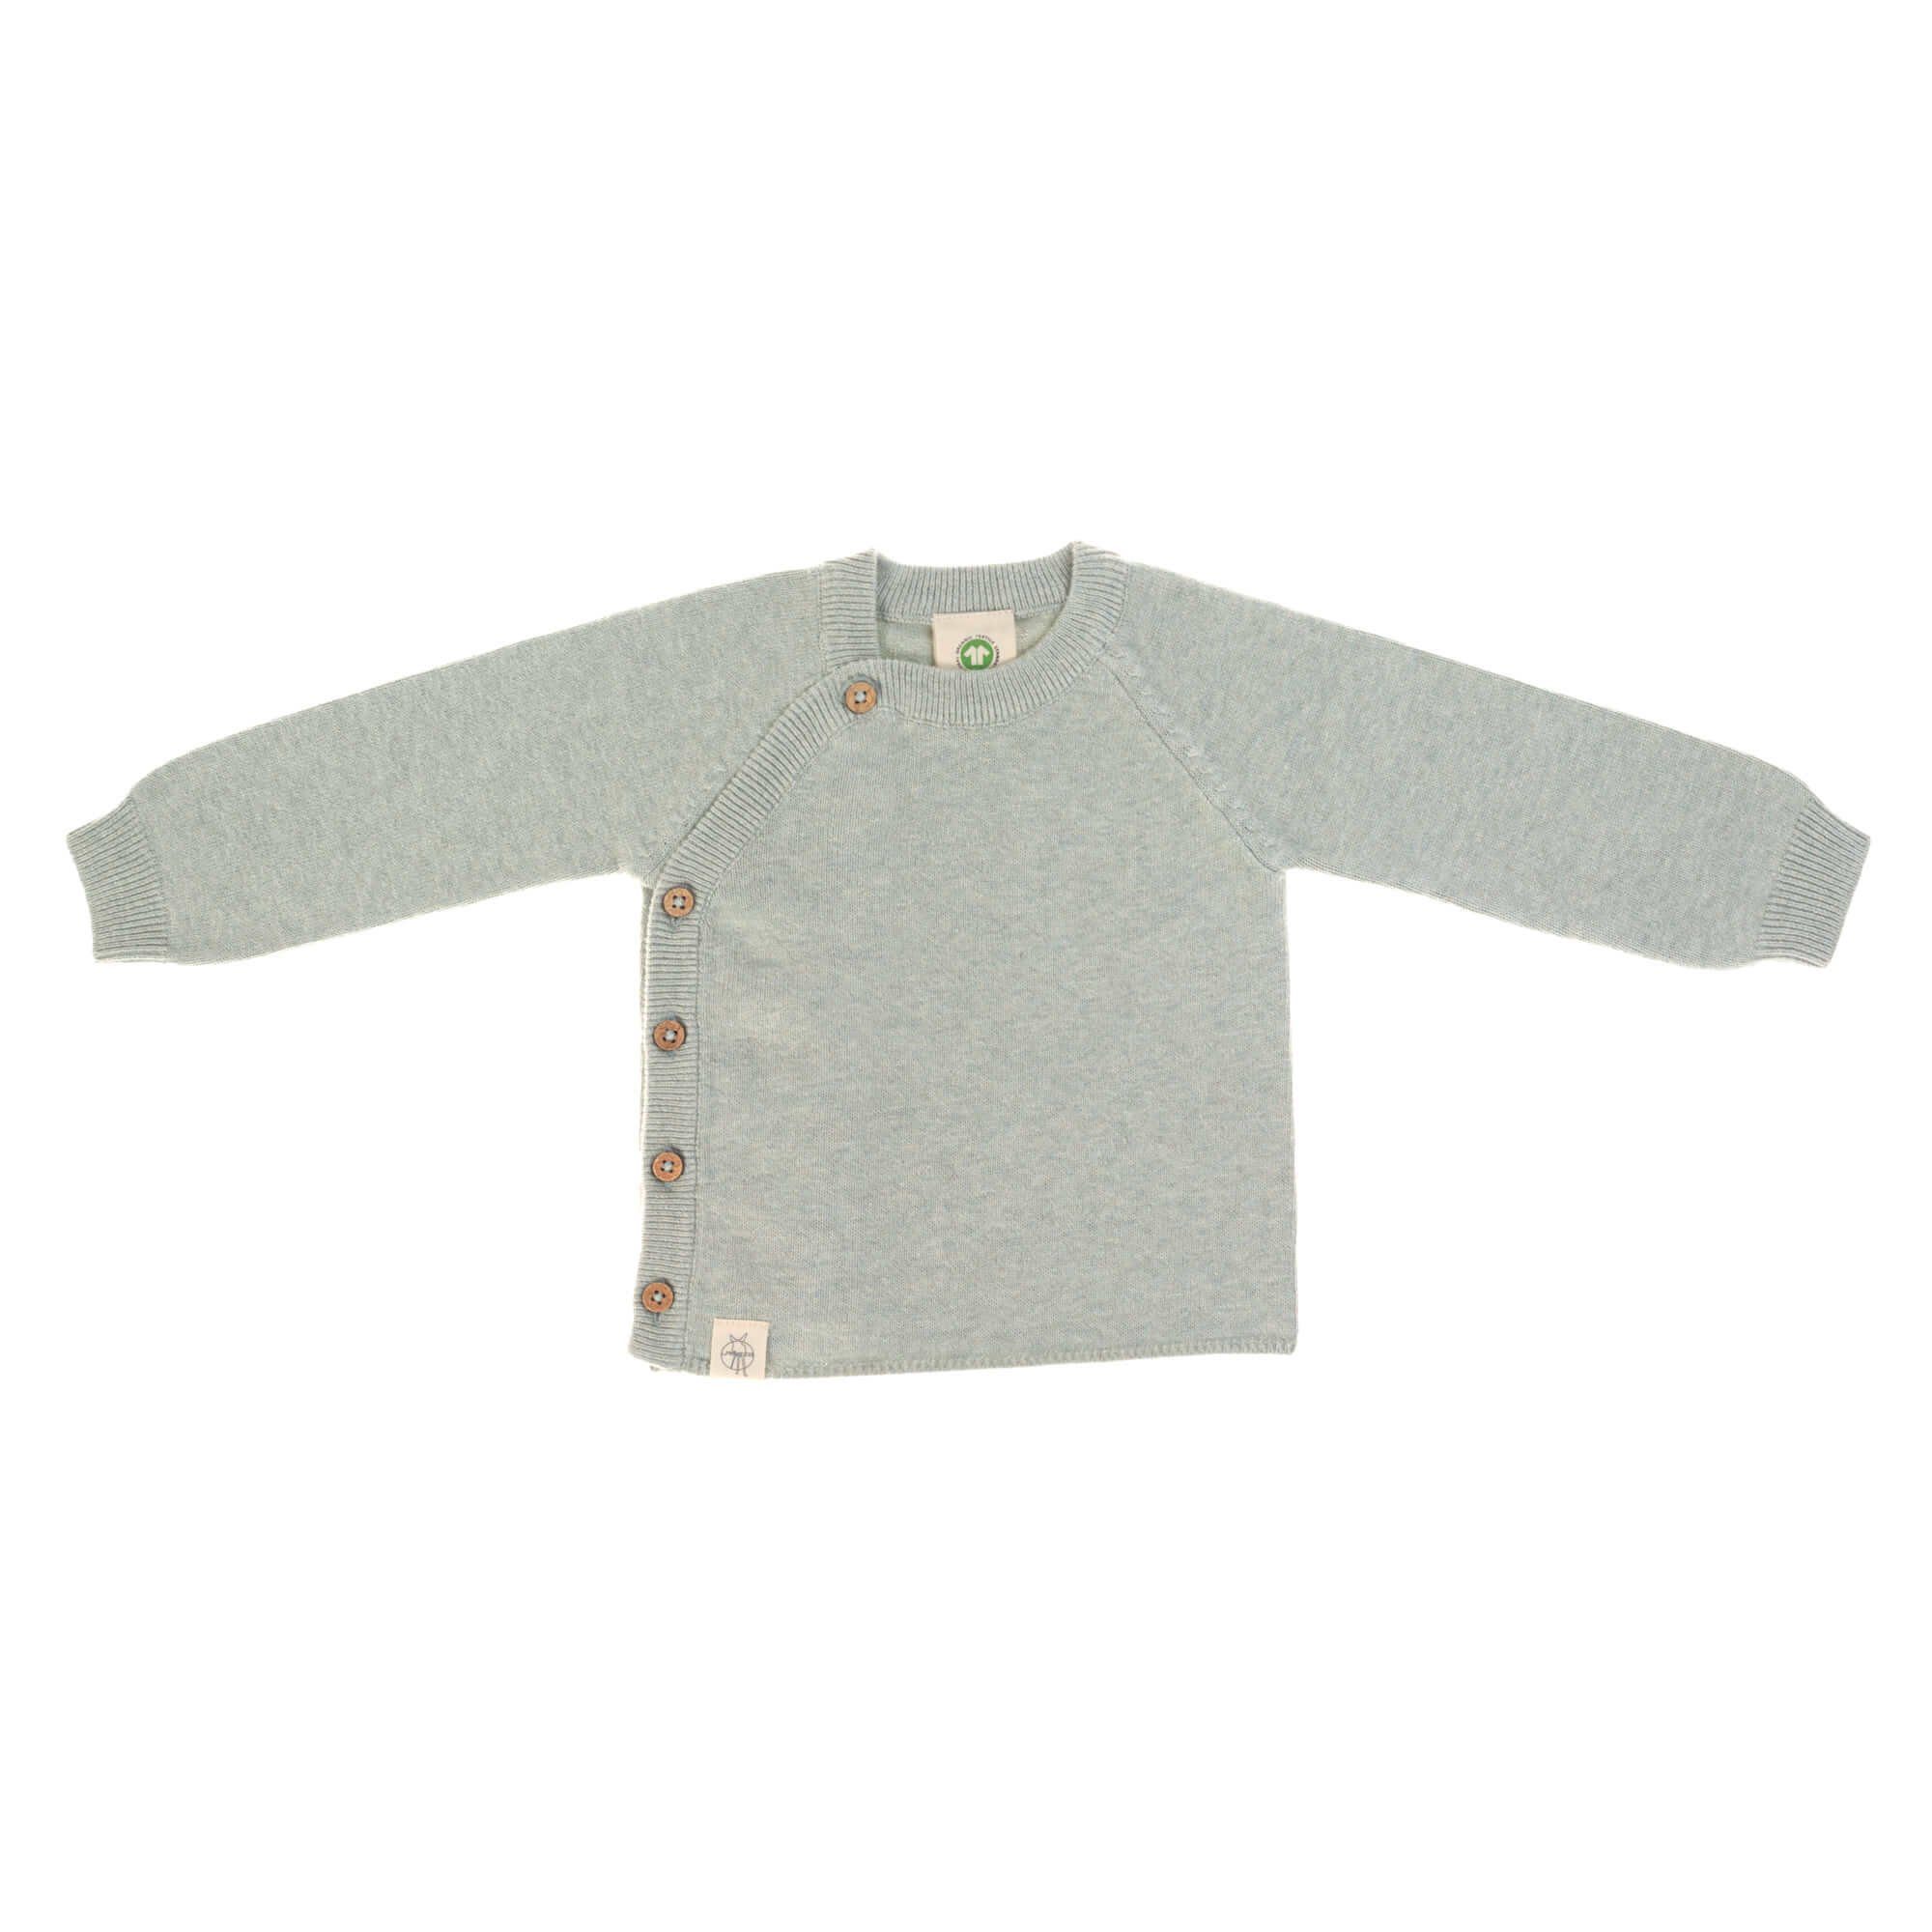 LÄSSIG Strickpullover Lässig Baby Pullover GOTS, Knitted Garden Explorer traumhaft weich mit Kokosnuss Knöpfen seitlich aqua-grey